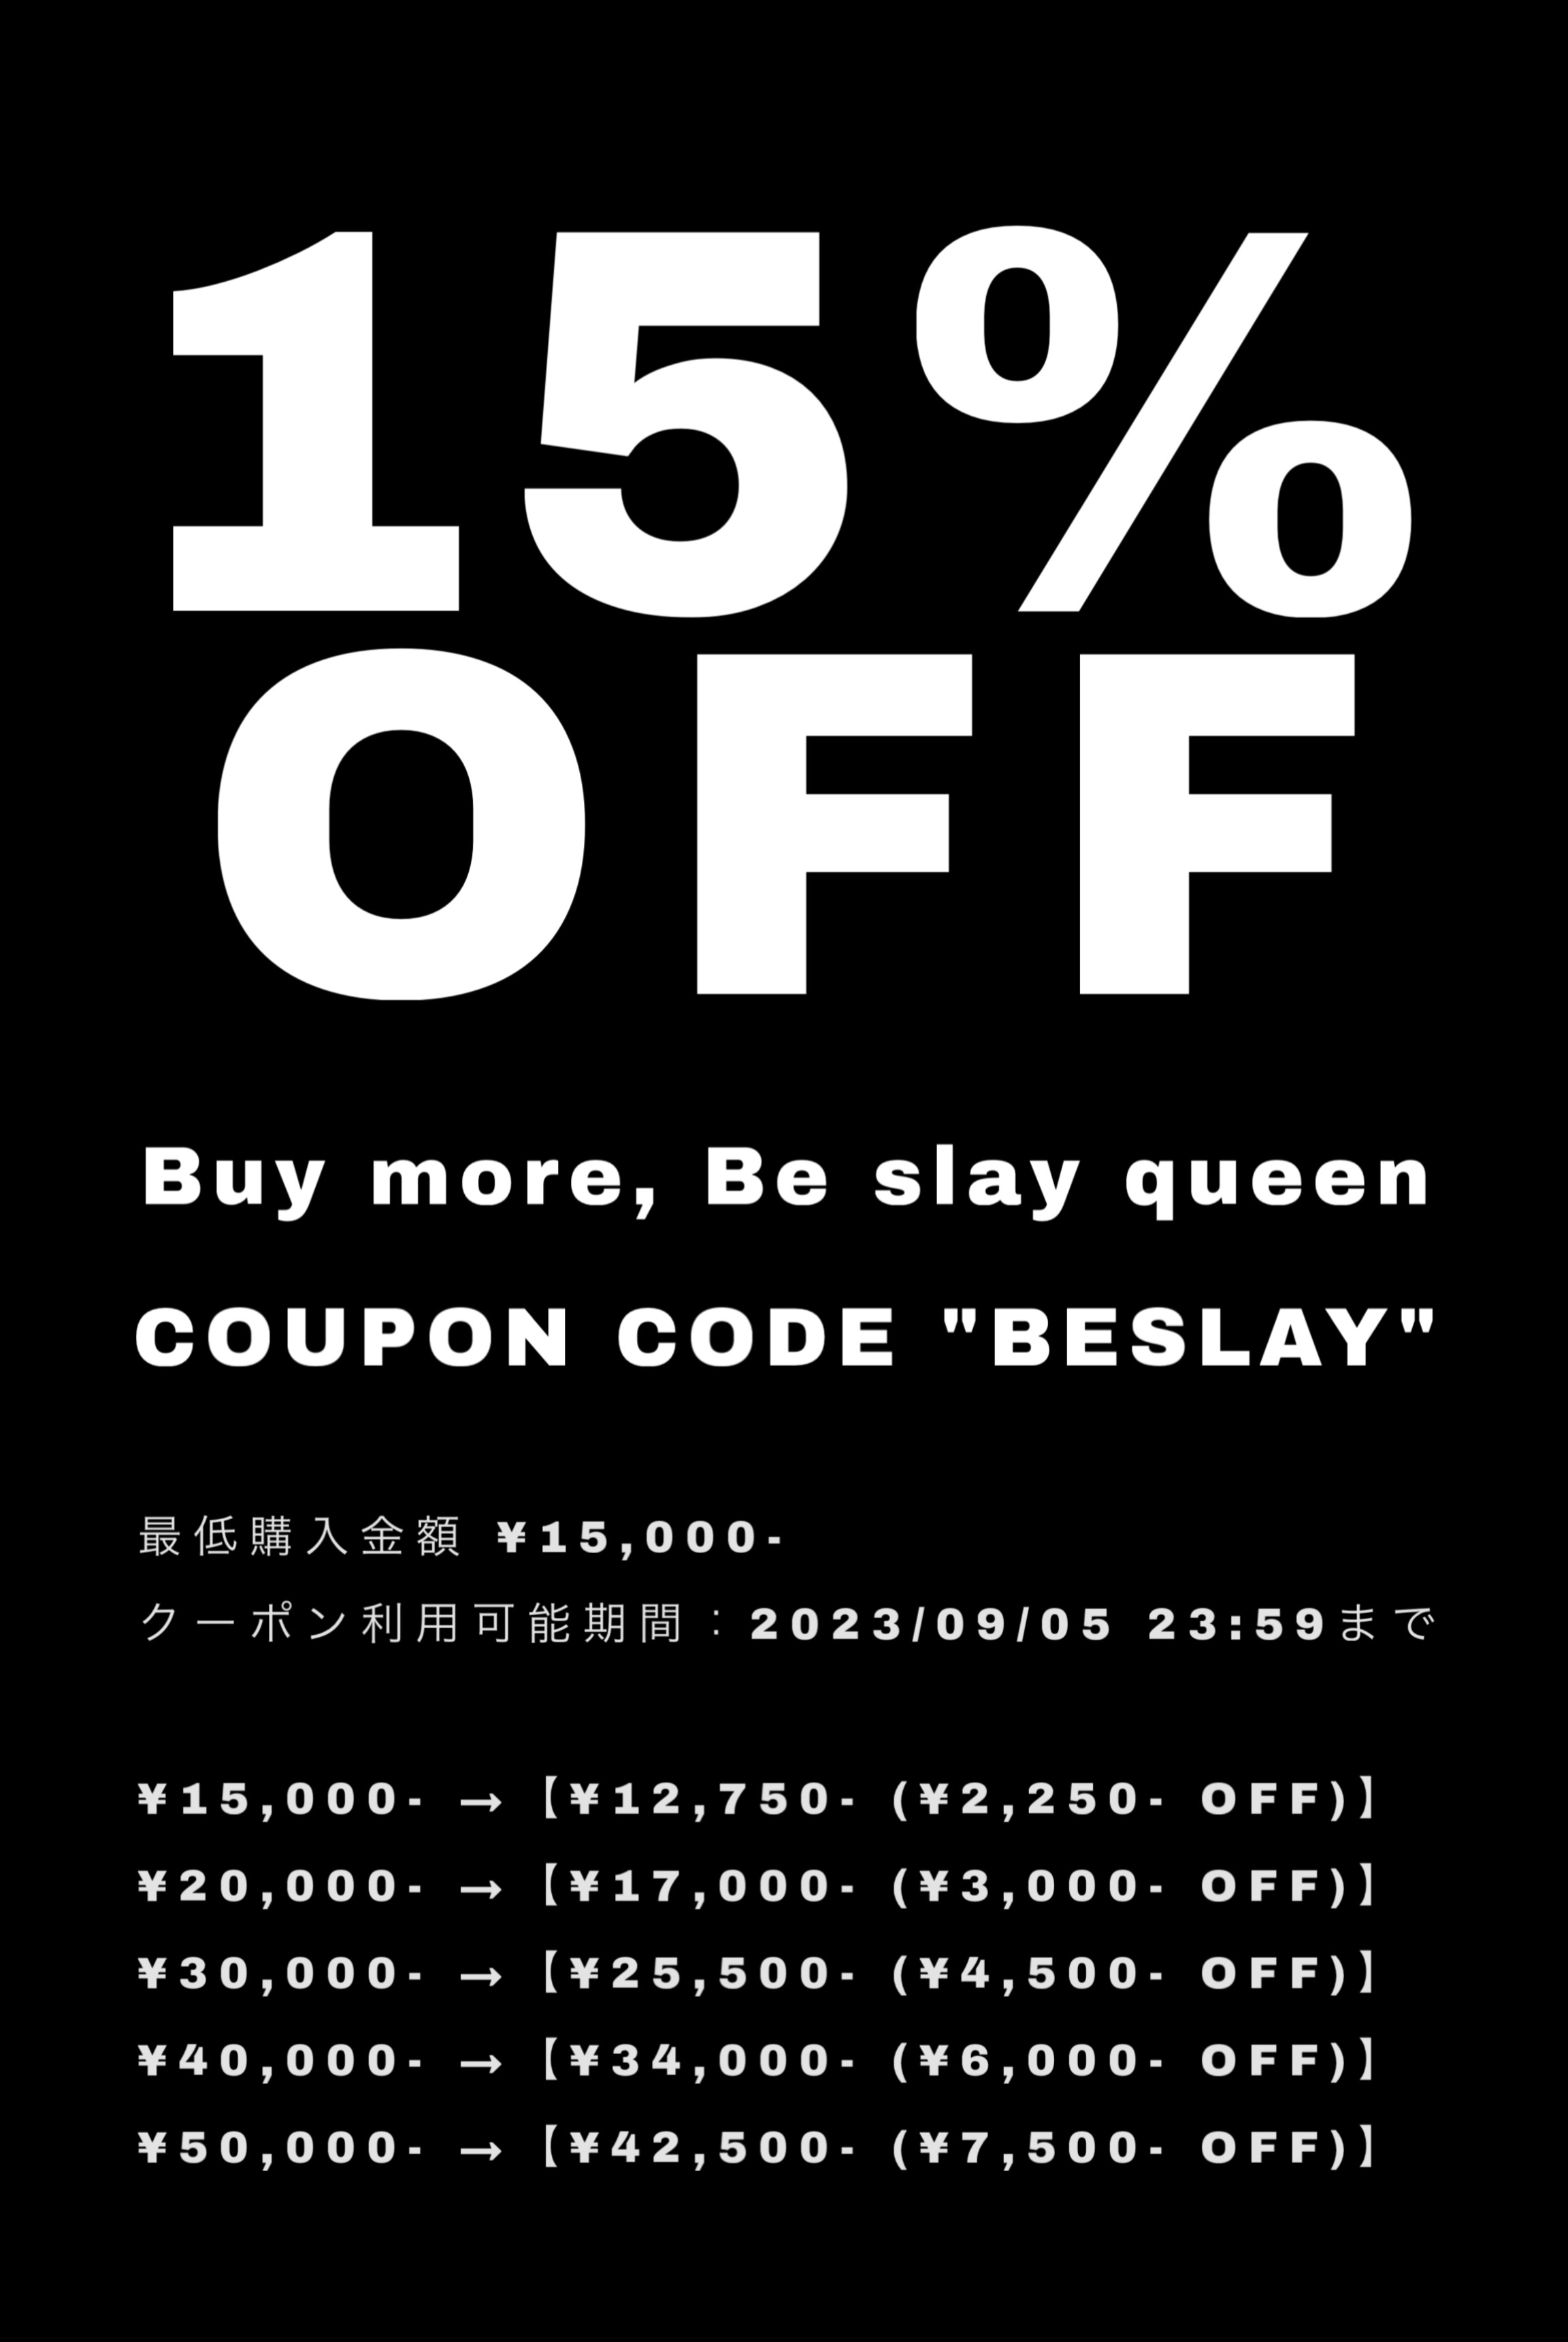 【15%OFF】COUPON CODE "BESLAY"